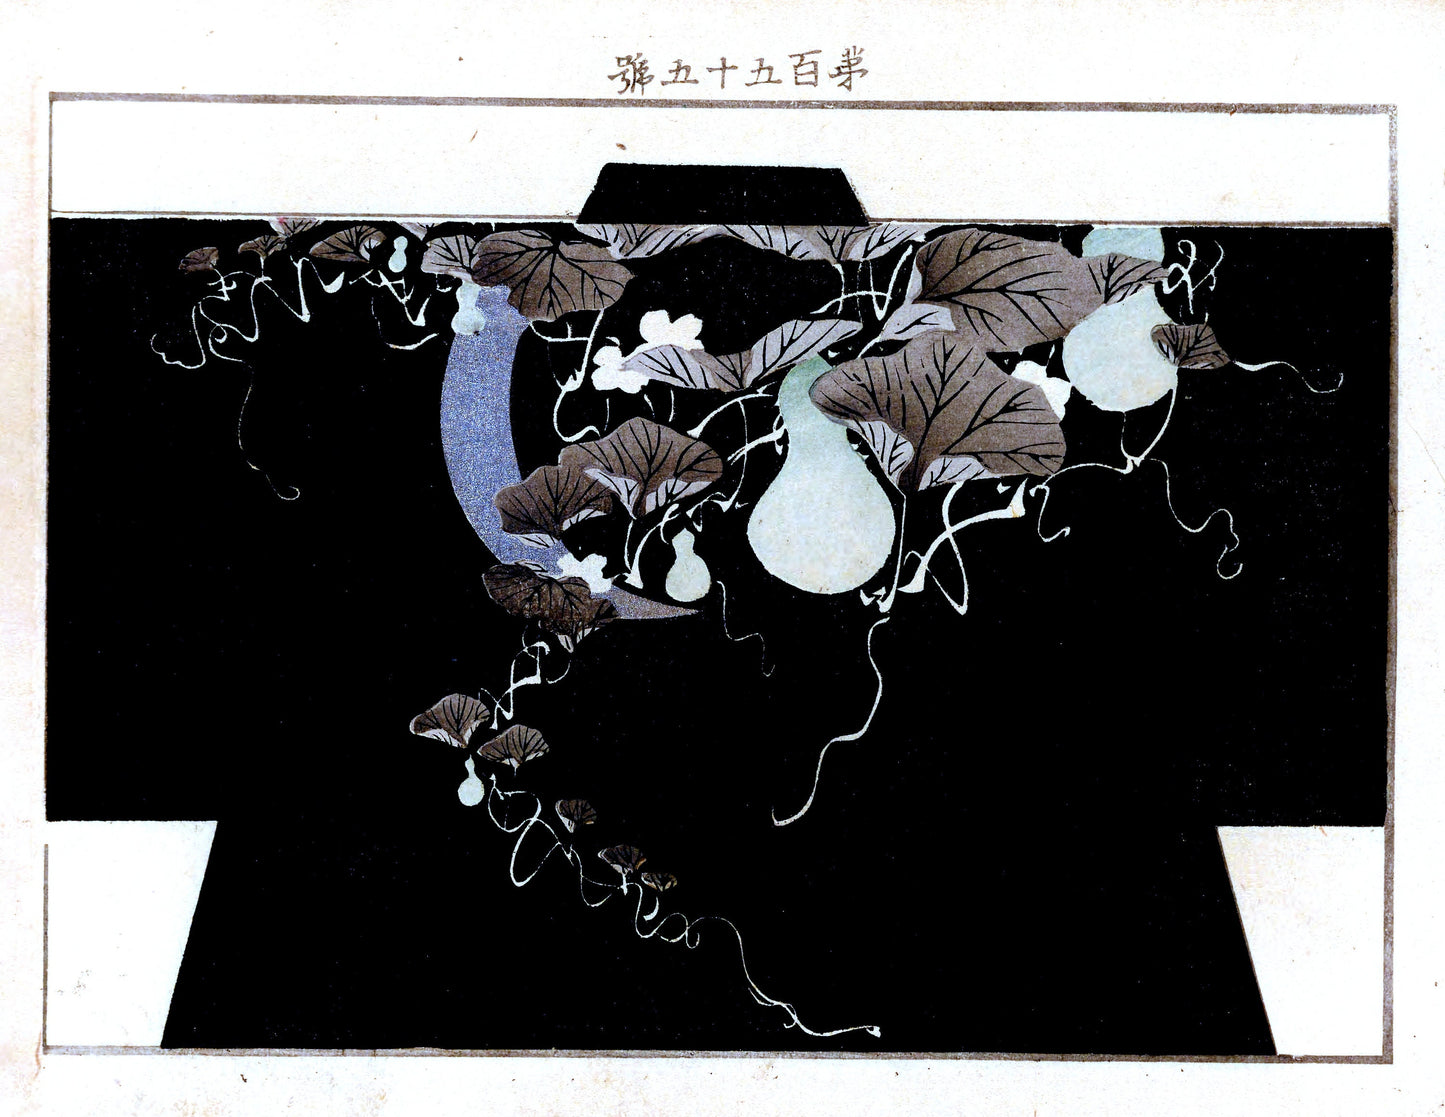 Yachigusa Kimono Design Seikō Ueno Set 1 [28 Images]